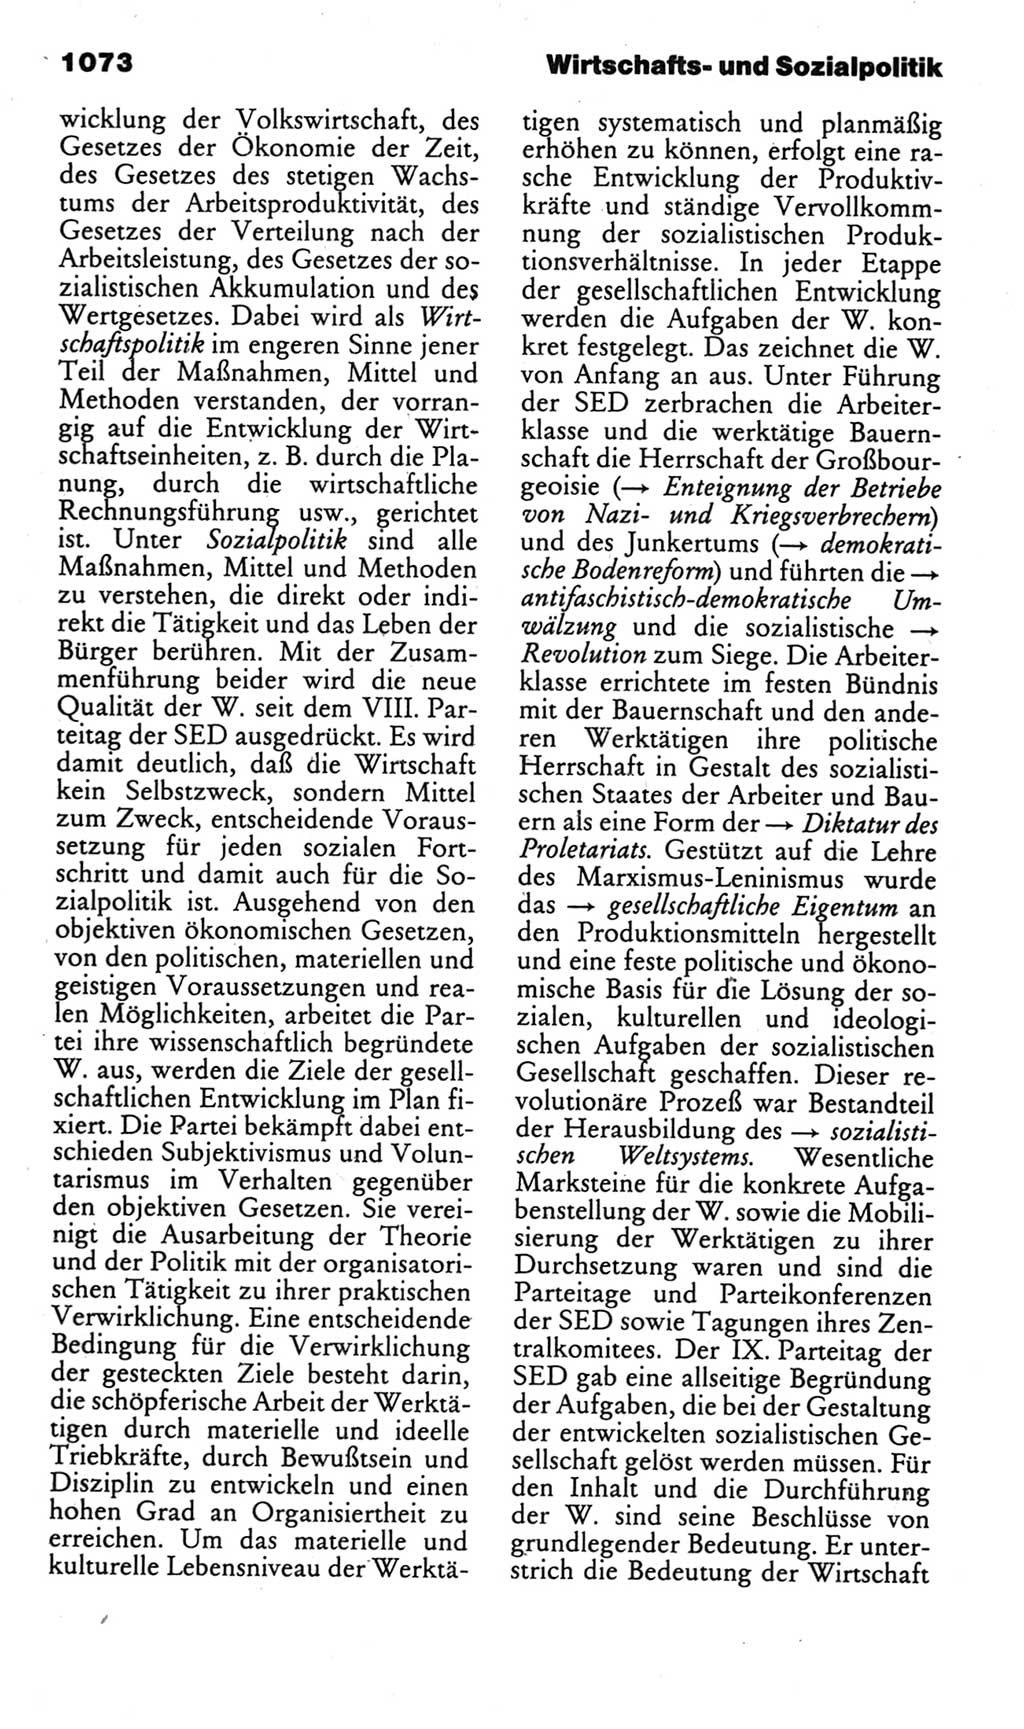 Kleines politisches Wörterbuch [Deutsche Demokratische Republik (DDR)] 1985, Seite 1073 (Kl. pol. Wb. DDR 1985, S. 1073)